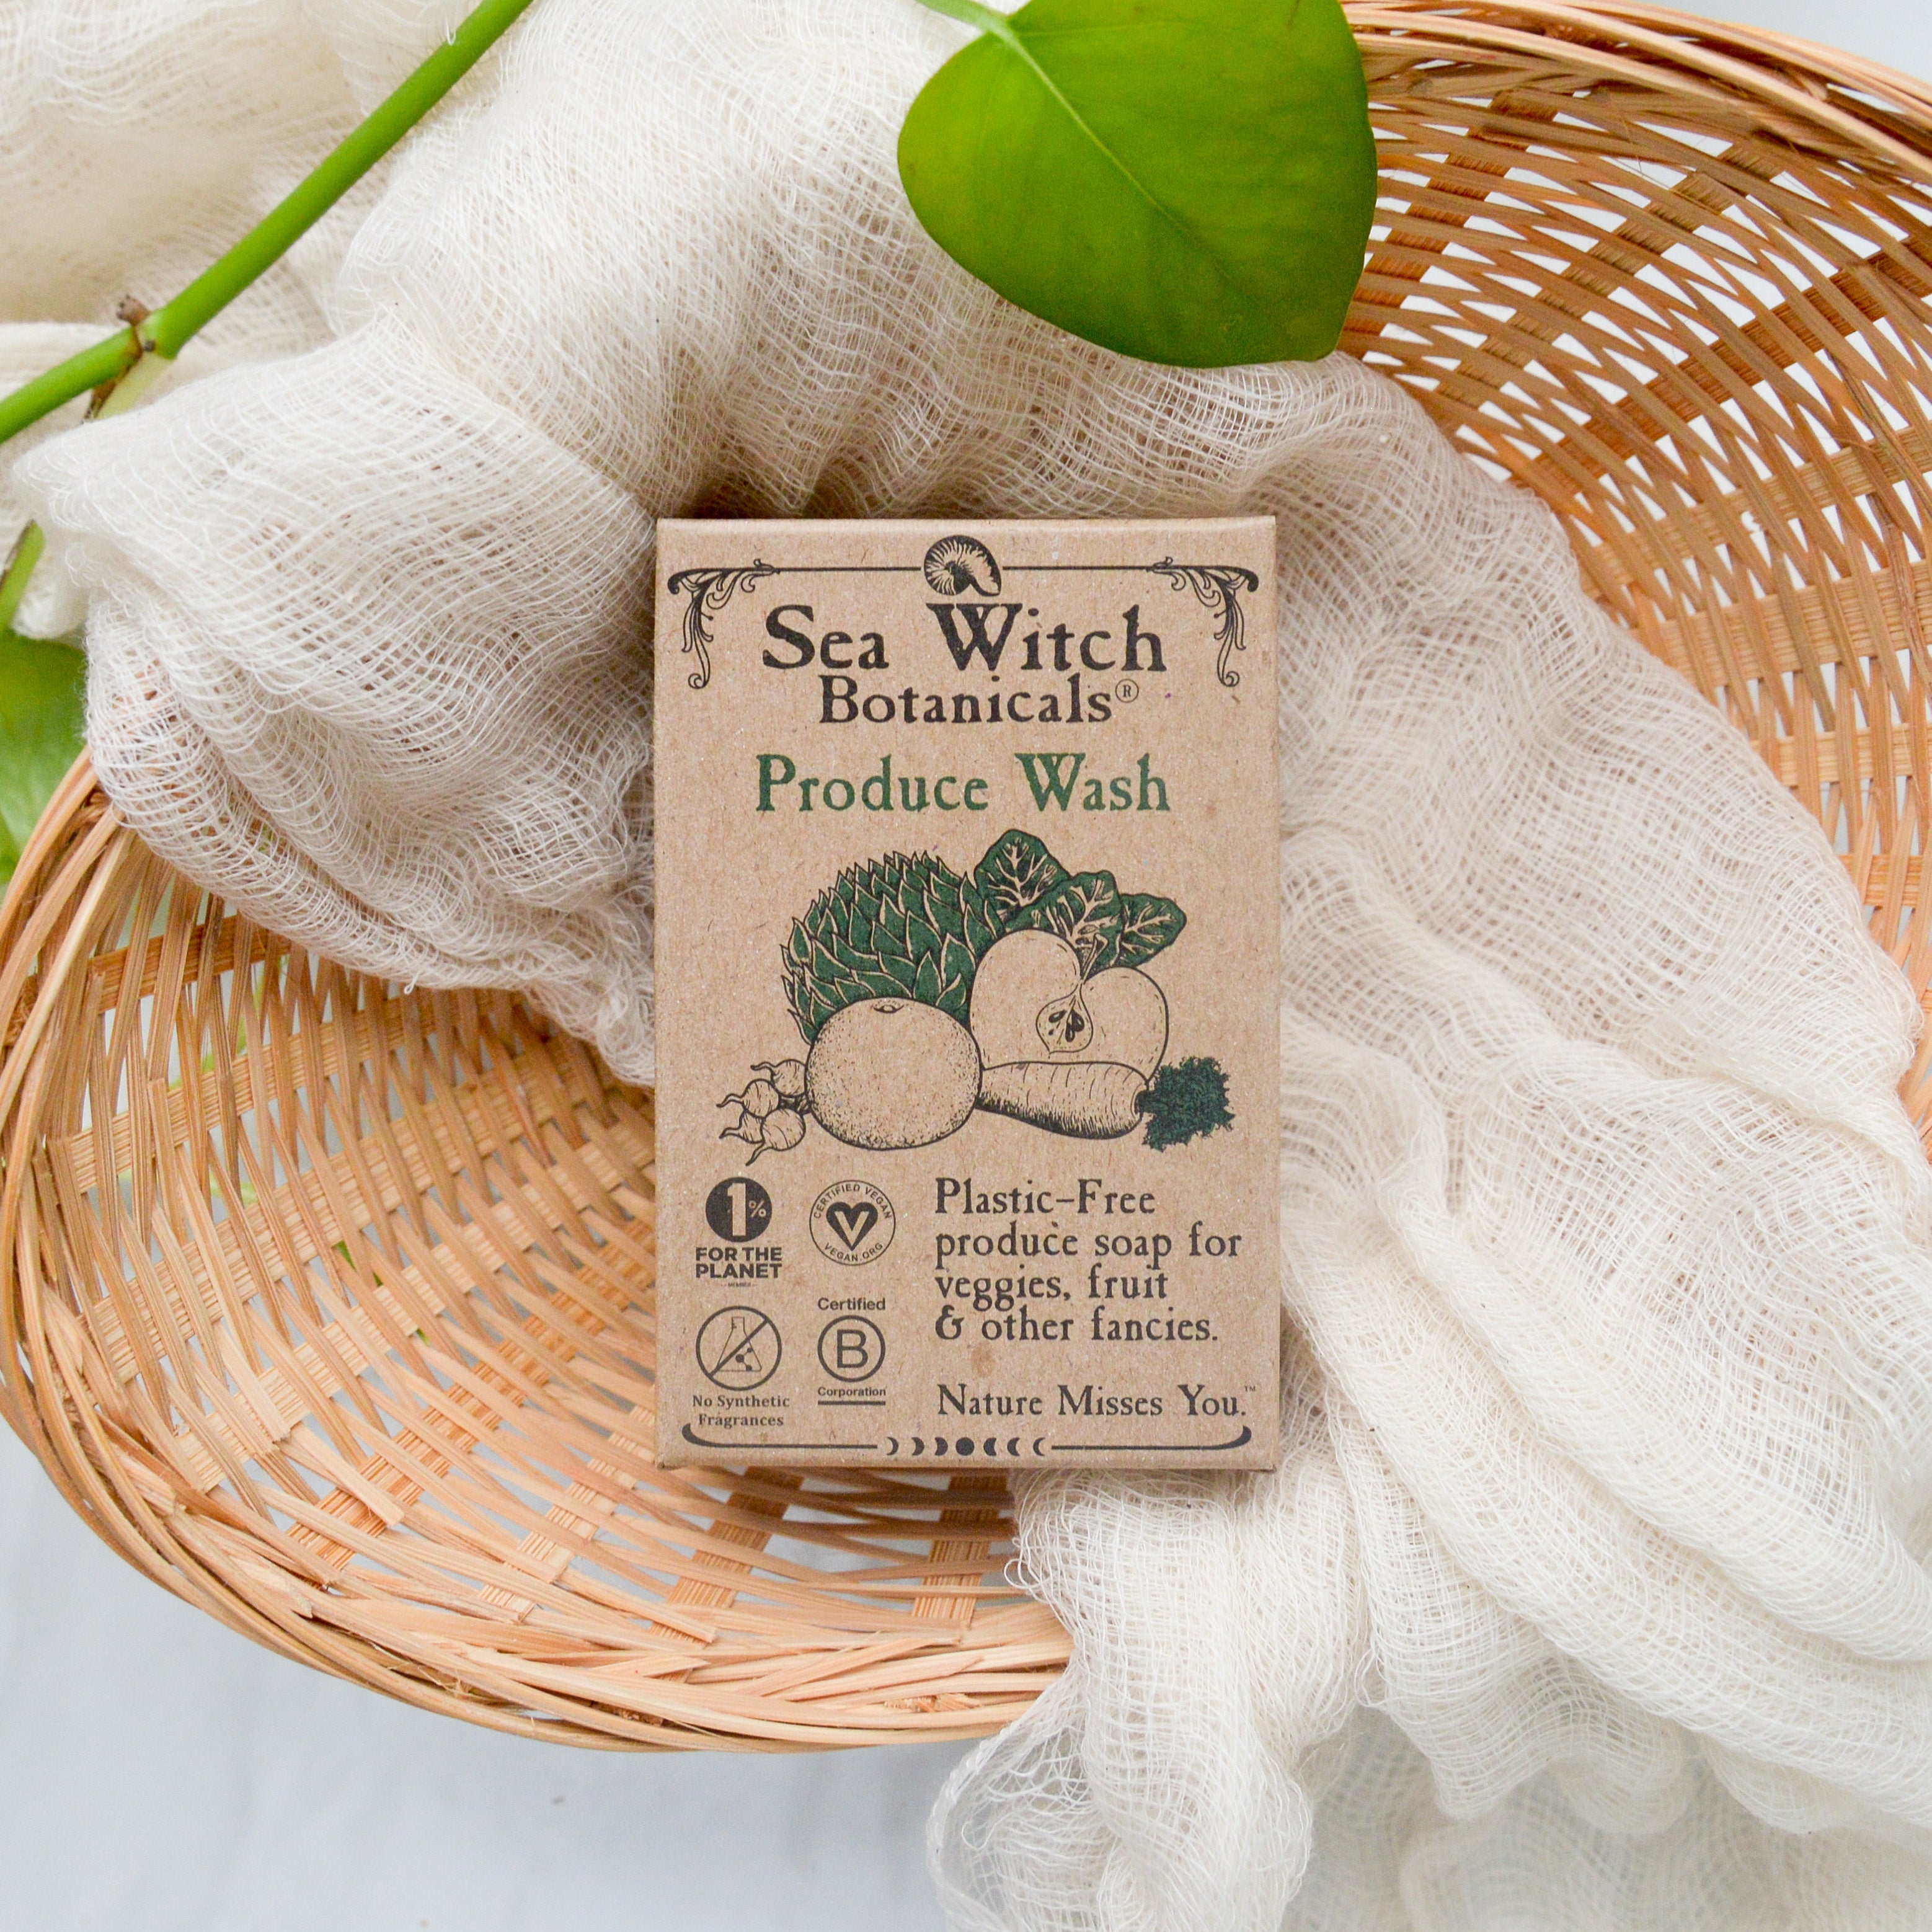 Sea Witch Botanicals Produce Wash